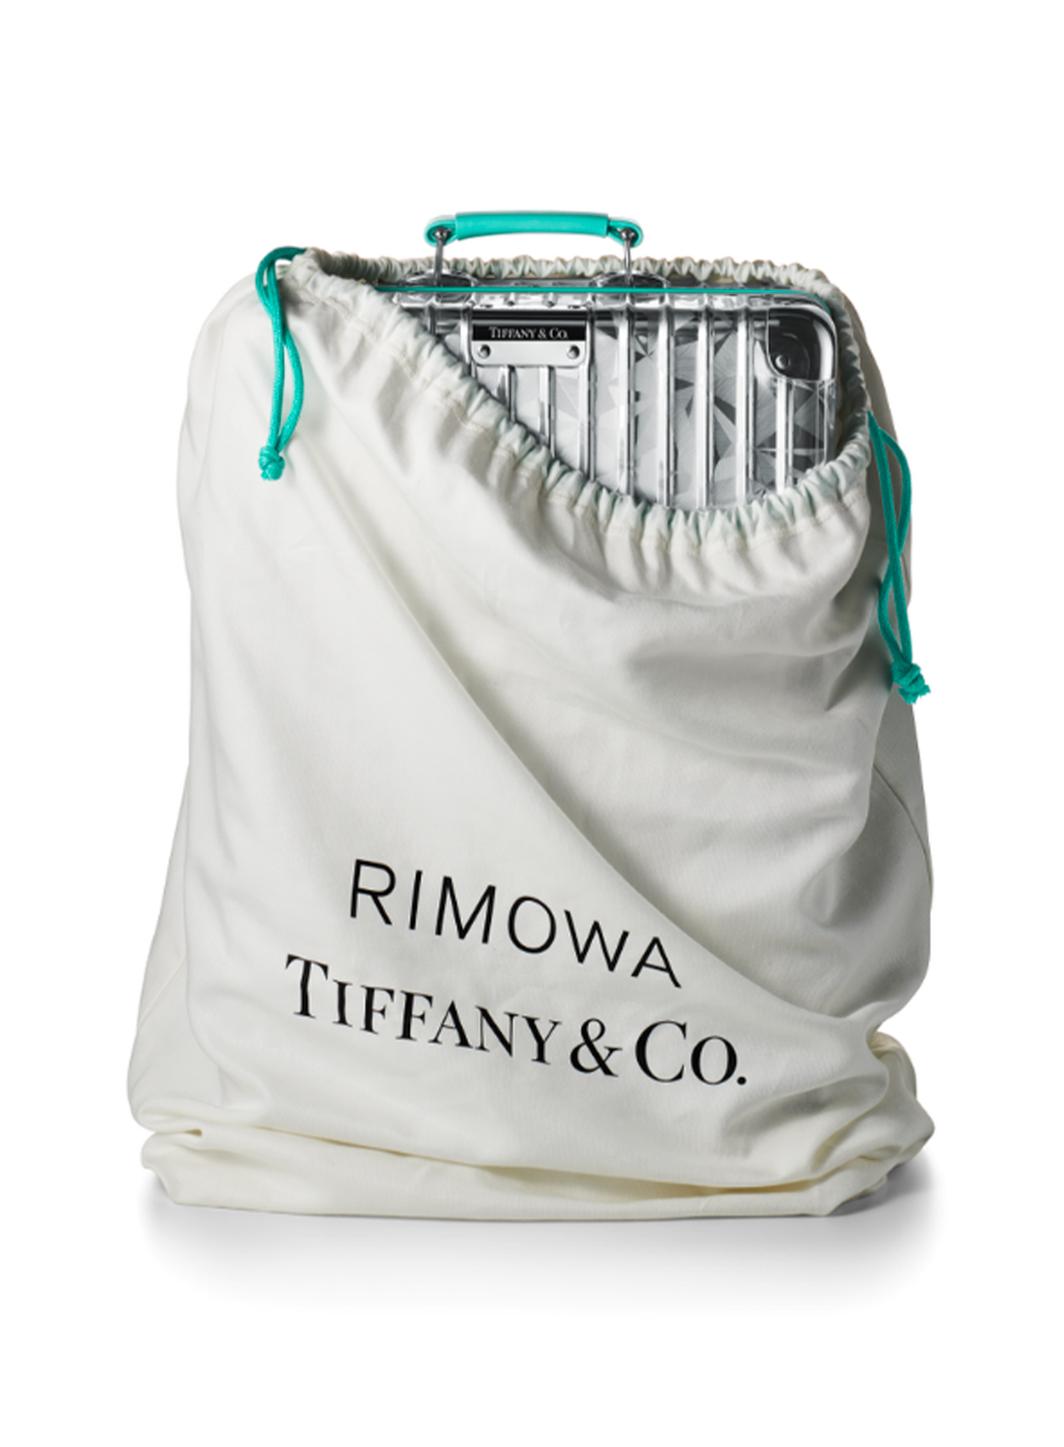 À la recherche de la collaboration parfaite : Tiffany x Rimowa.